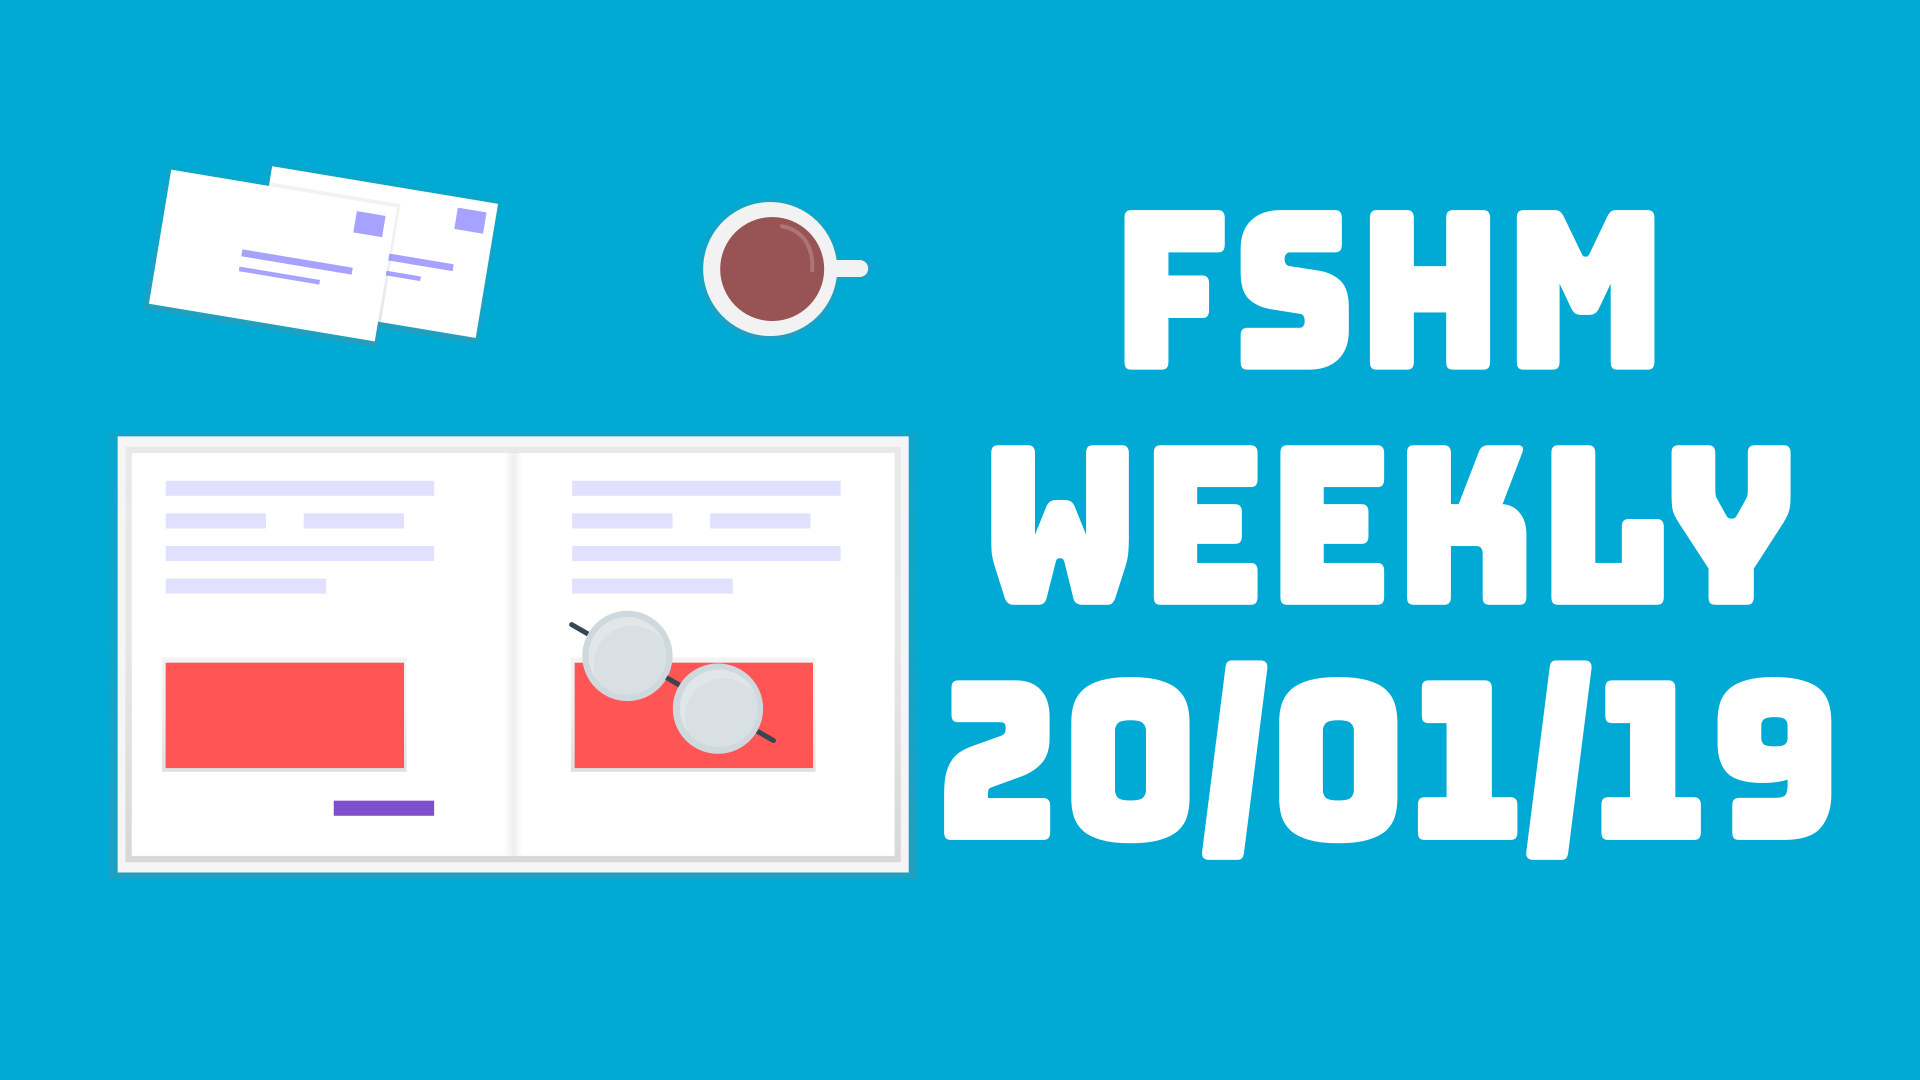 FSHM Weekly - 20/1/19